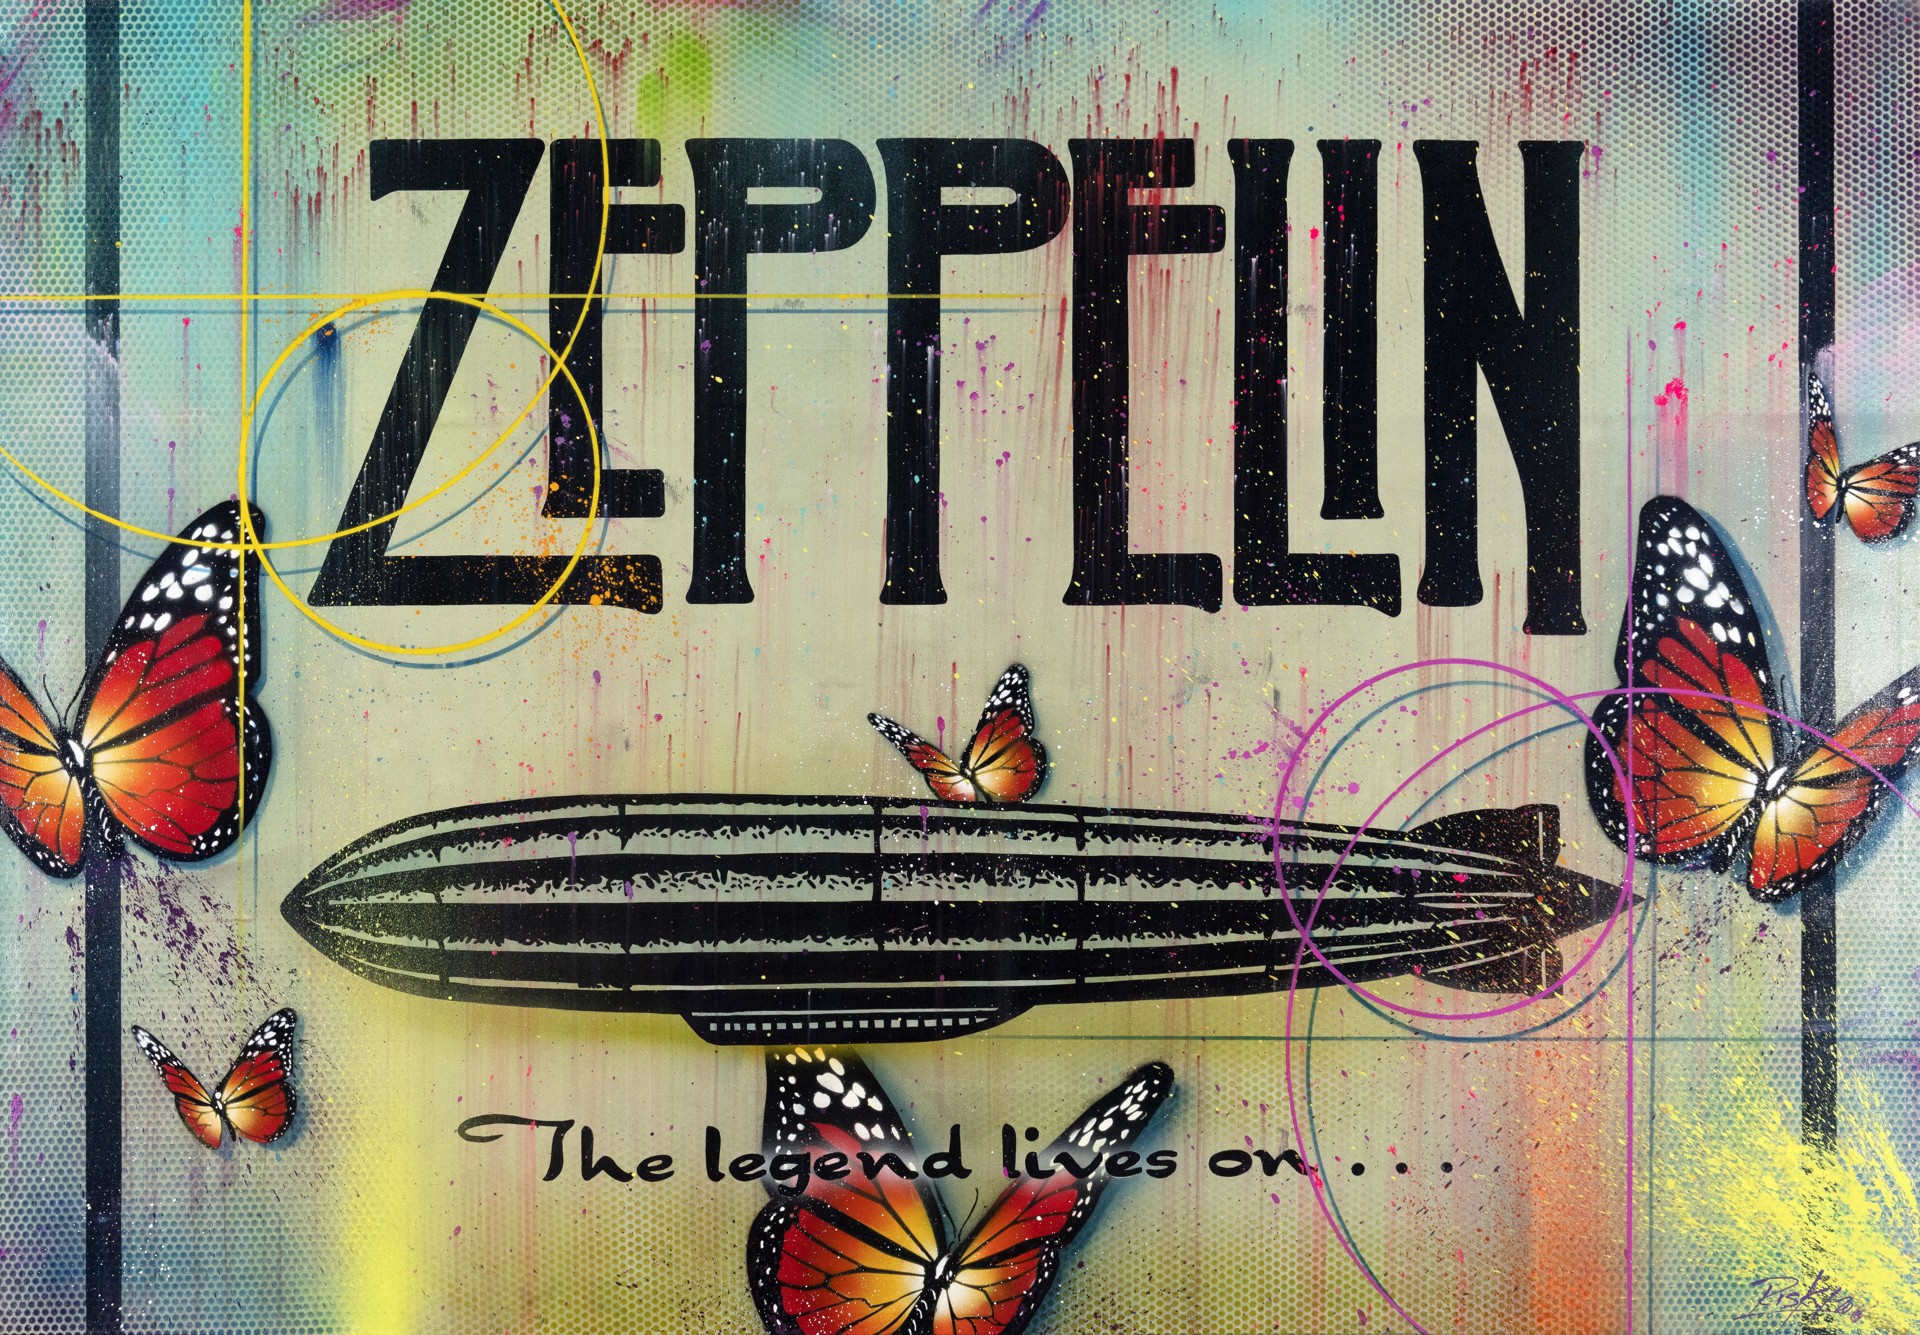 Led Zeppelin Butterflies by Risk